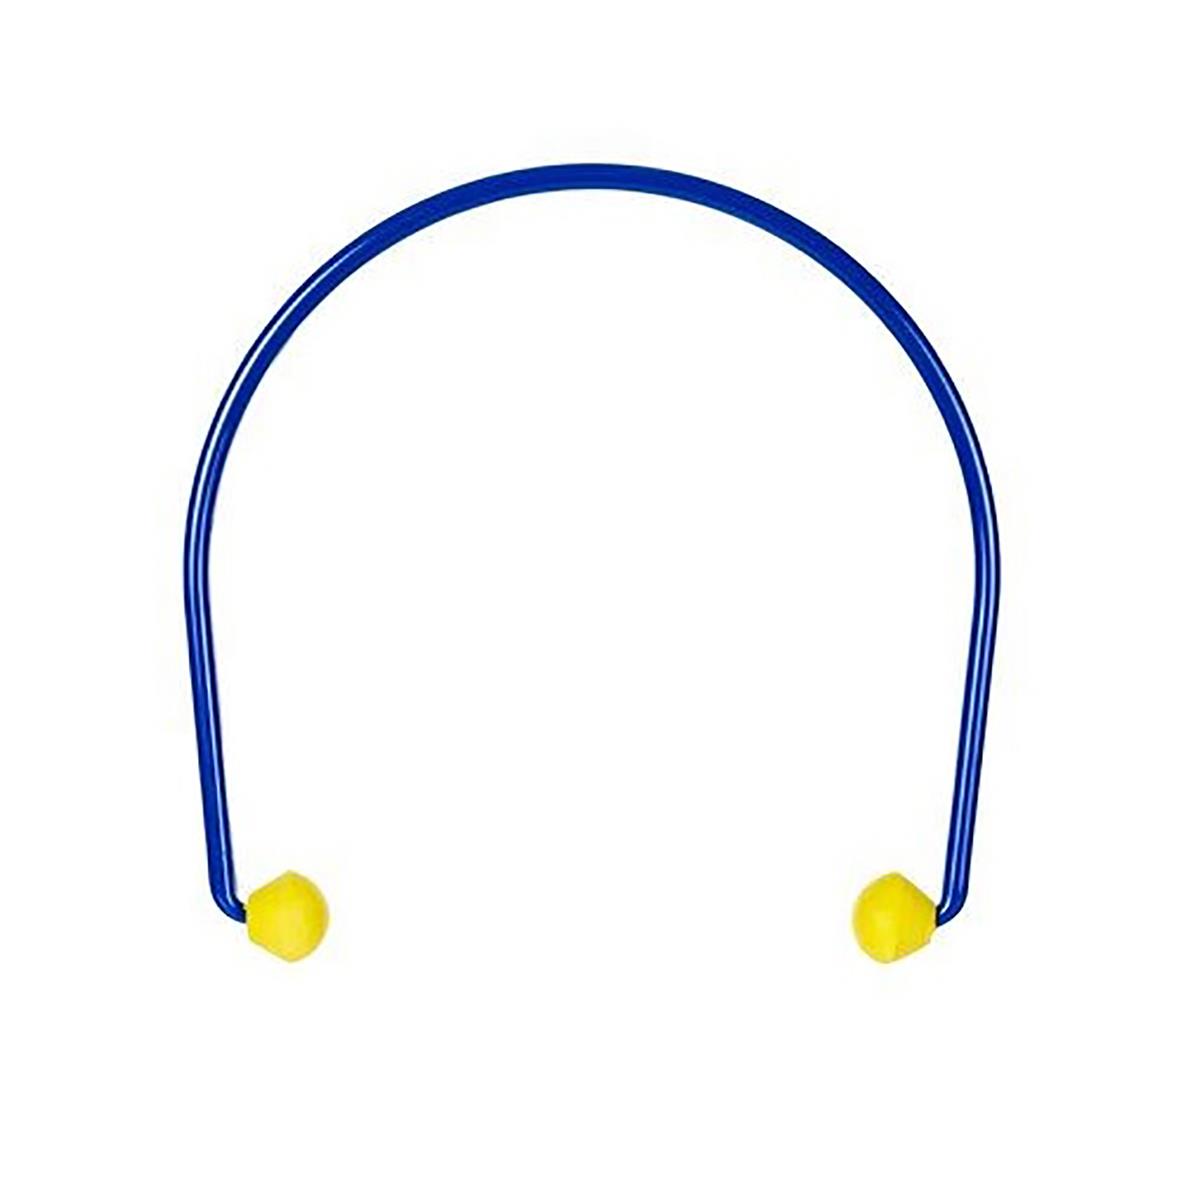 Hörselpropp 3M EarCaps med bygel blå/gul 58020001